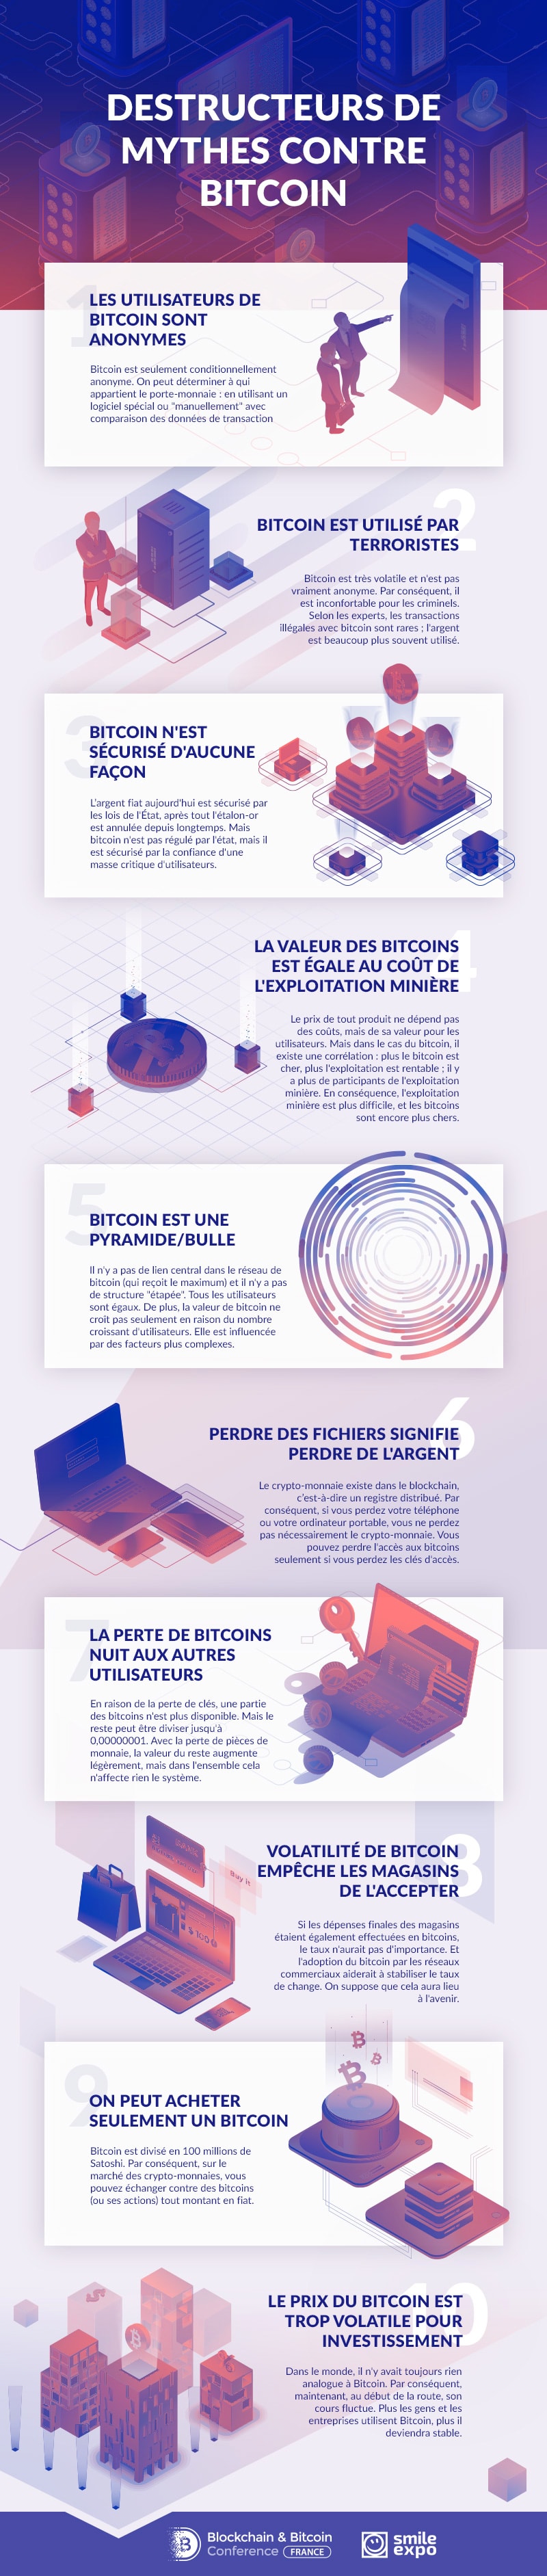 Infographie : destructeurs de mythes contre Bitcoin